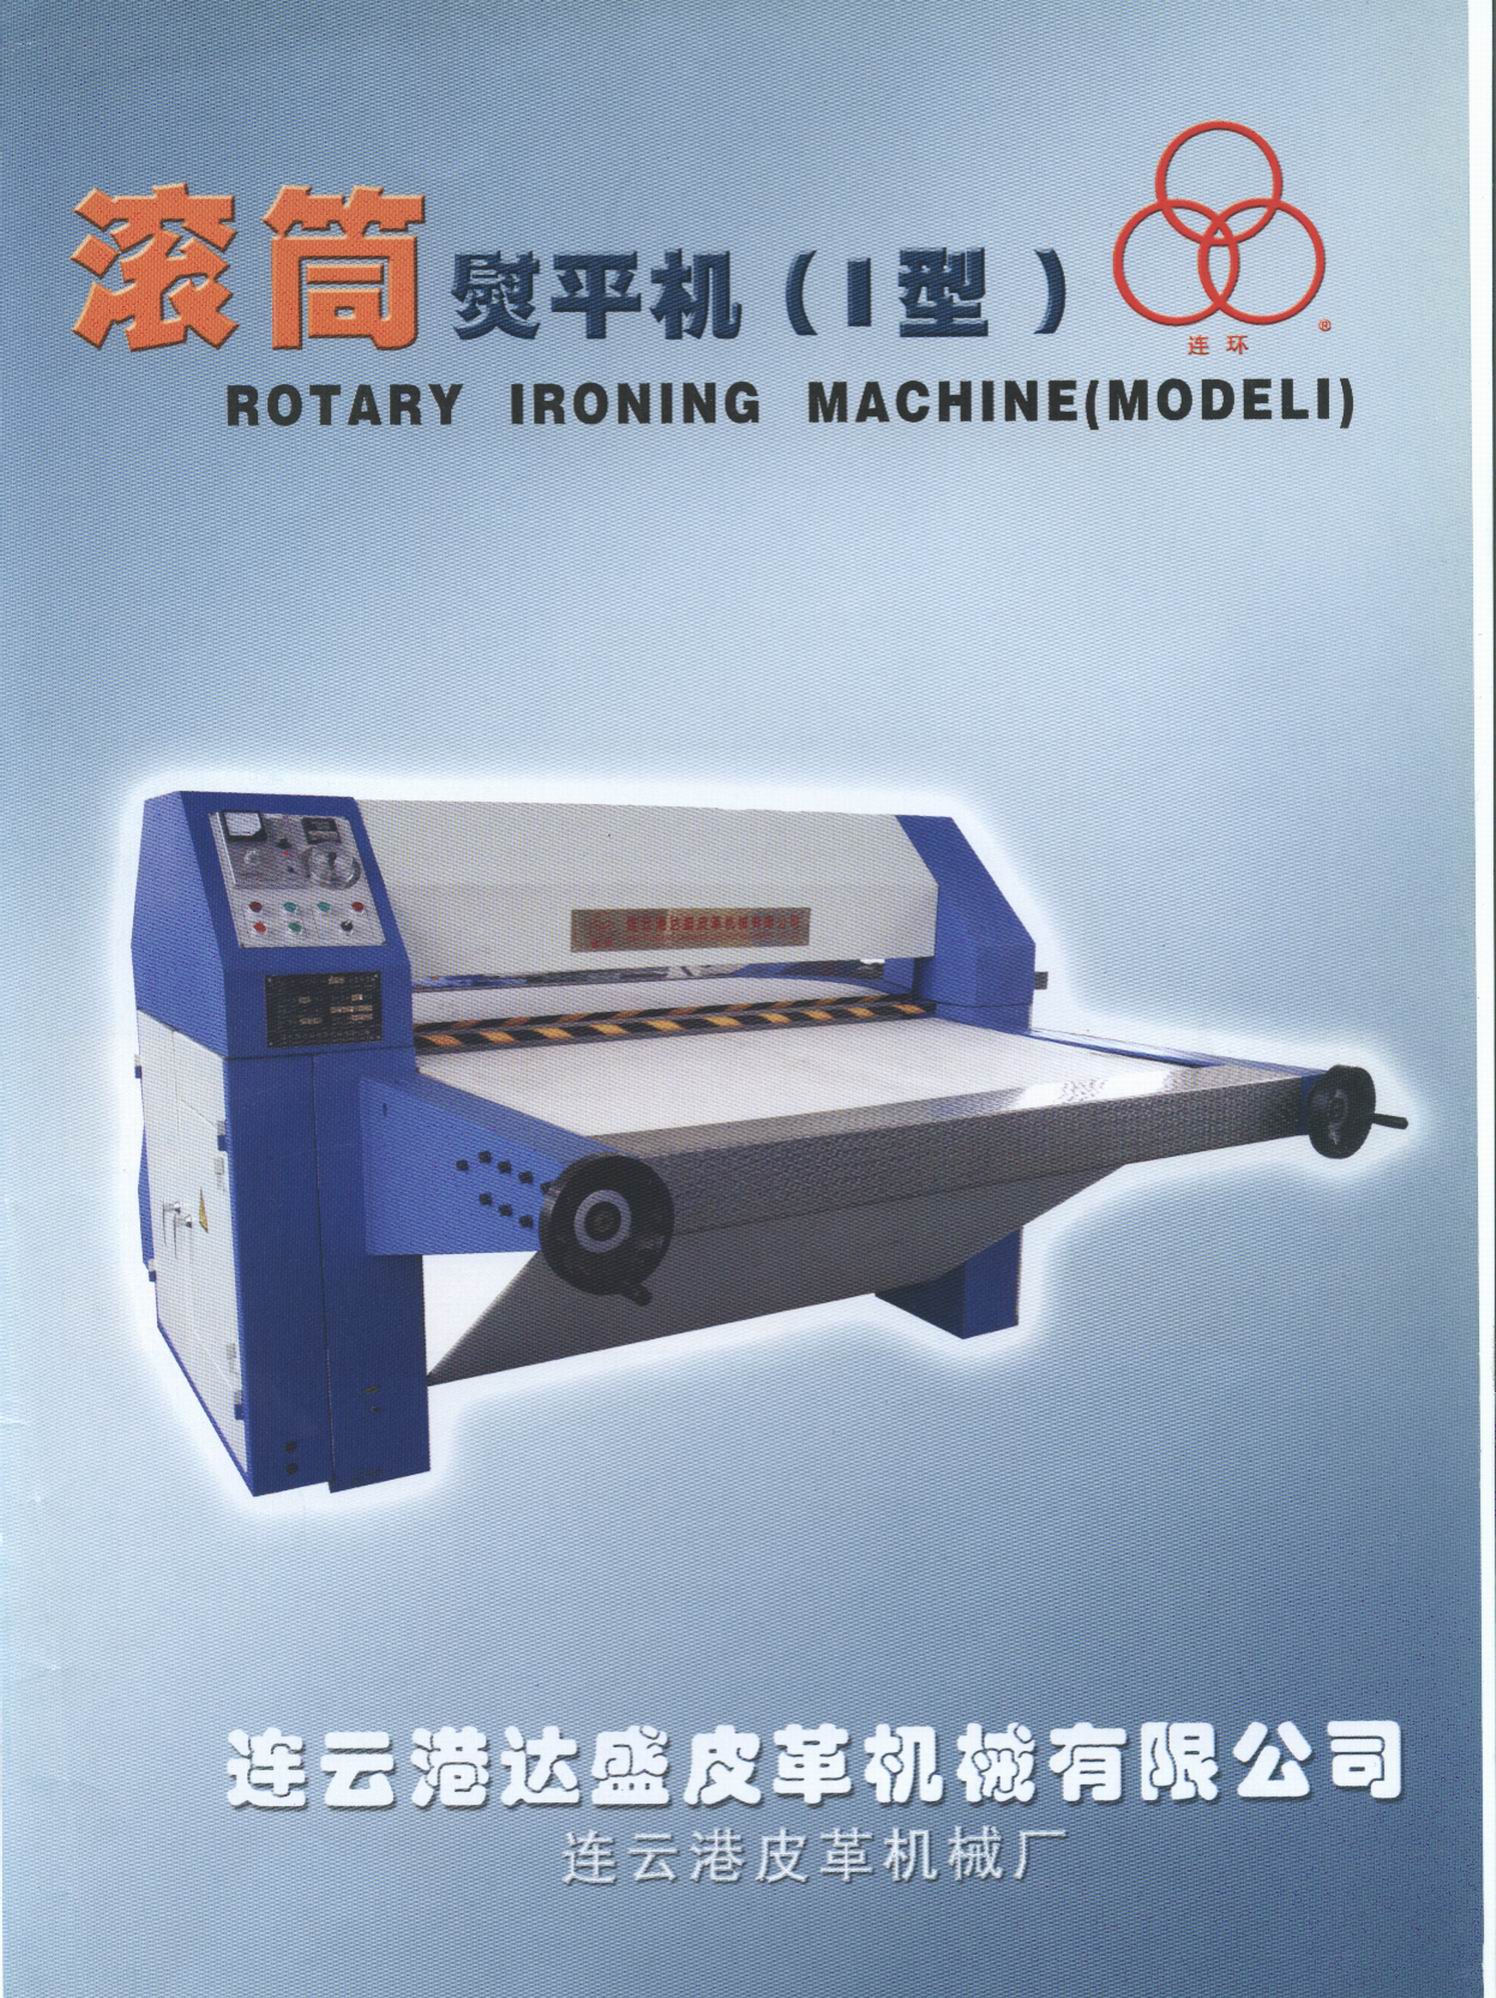 rotary ironing machine